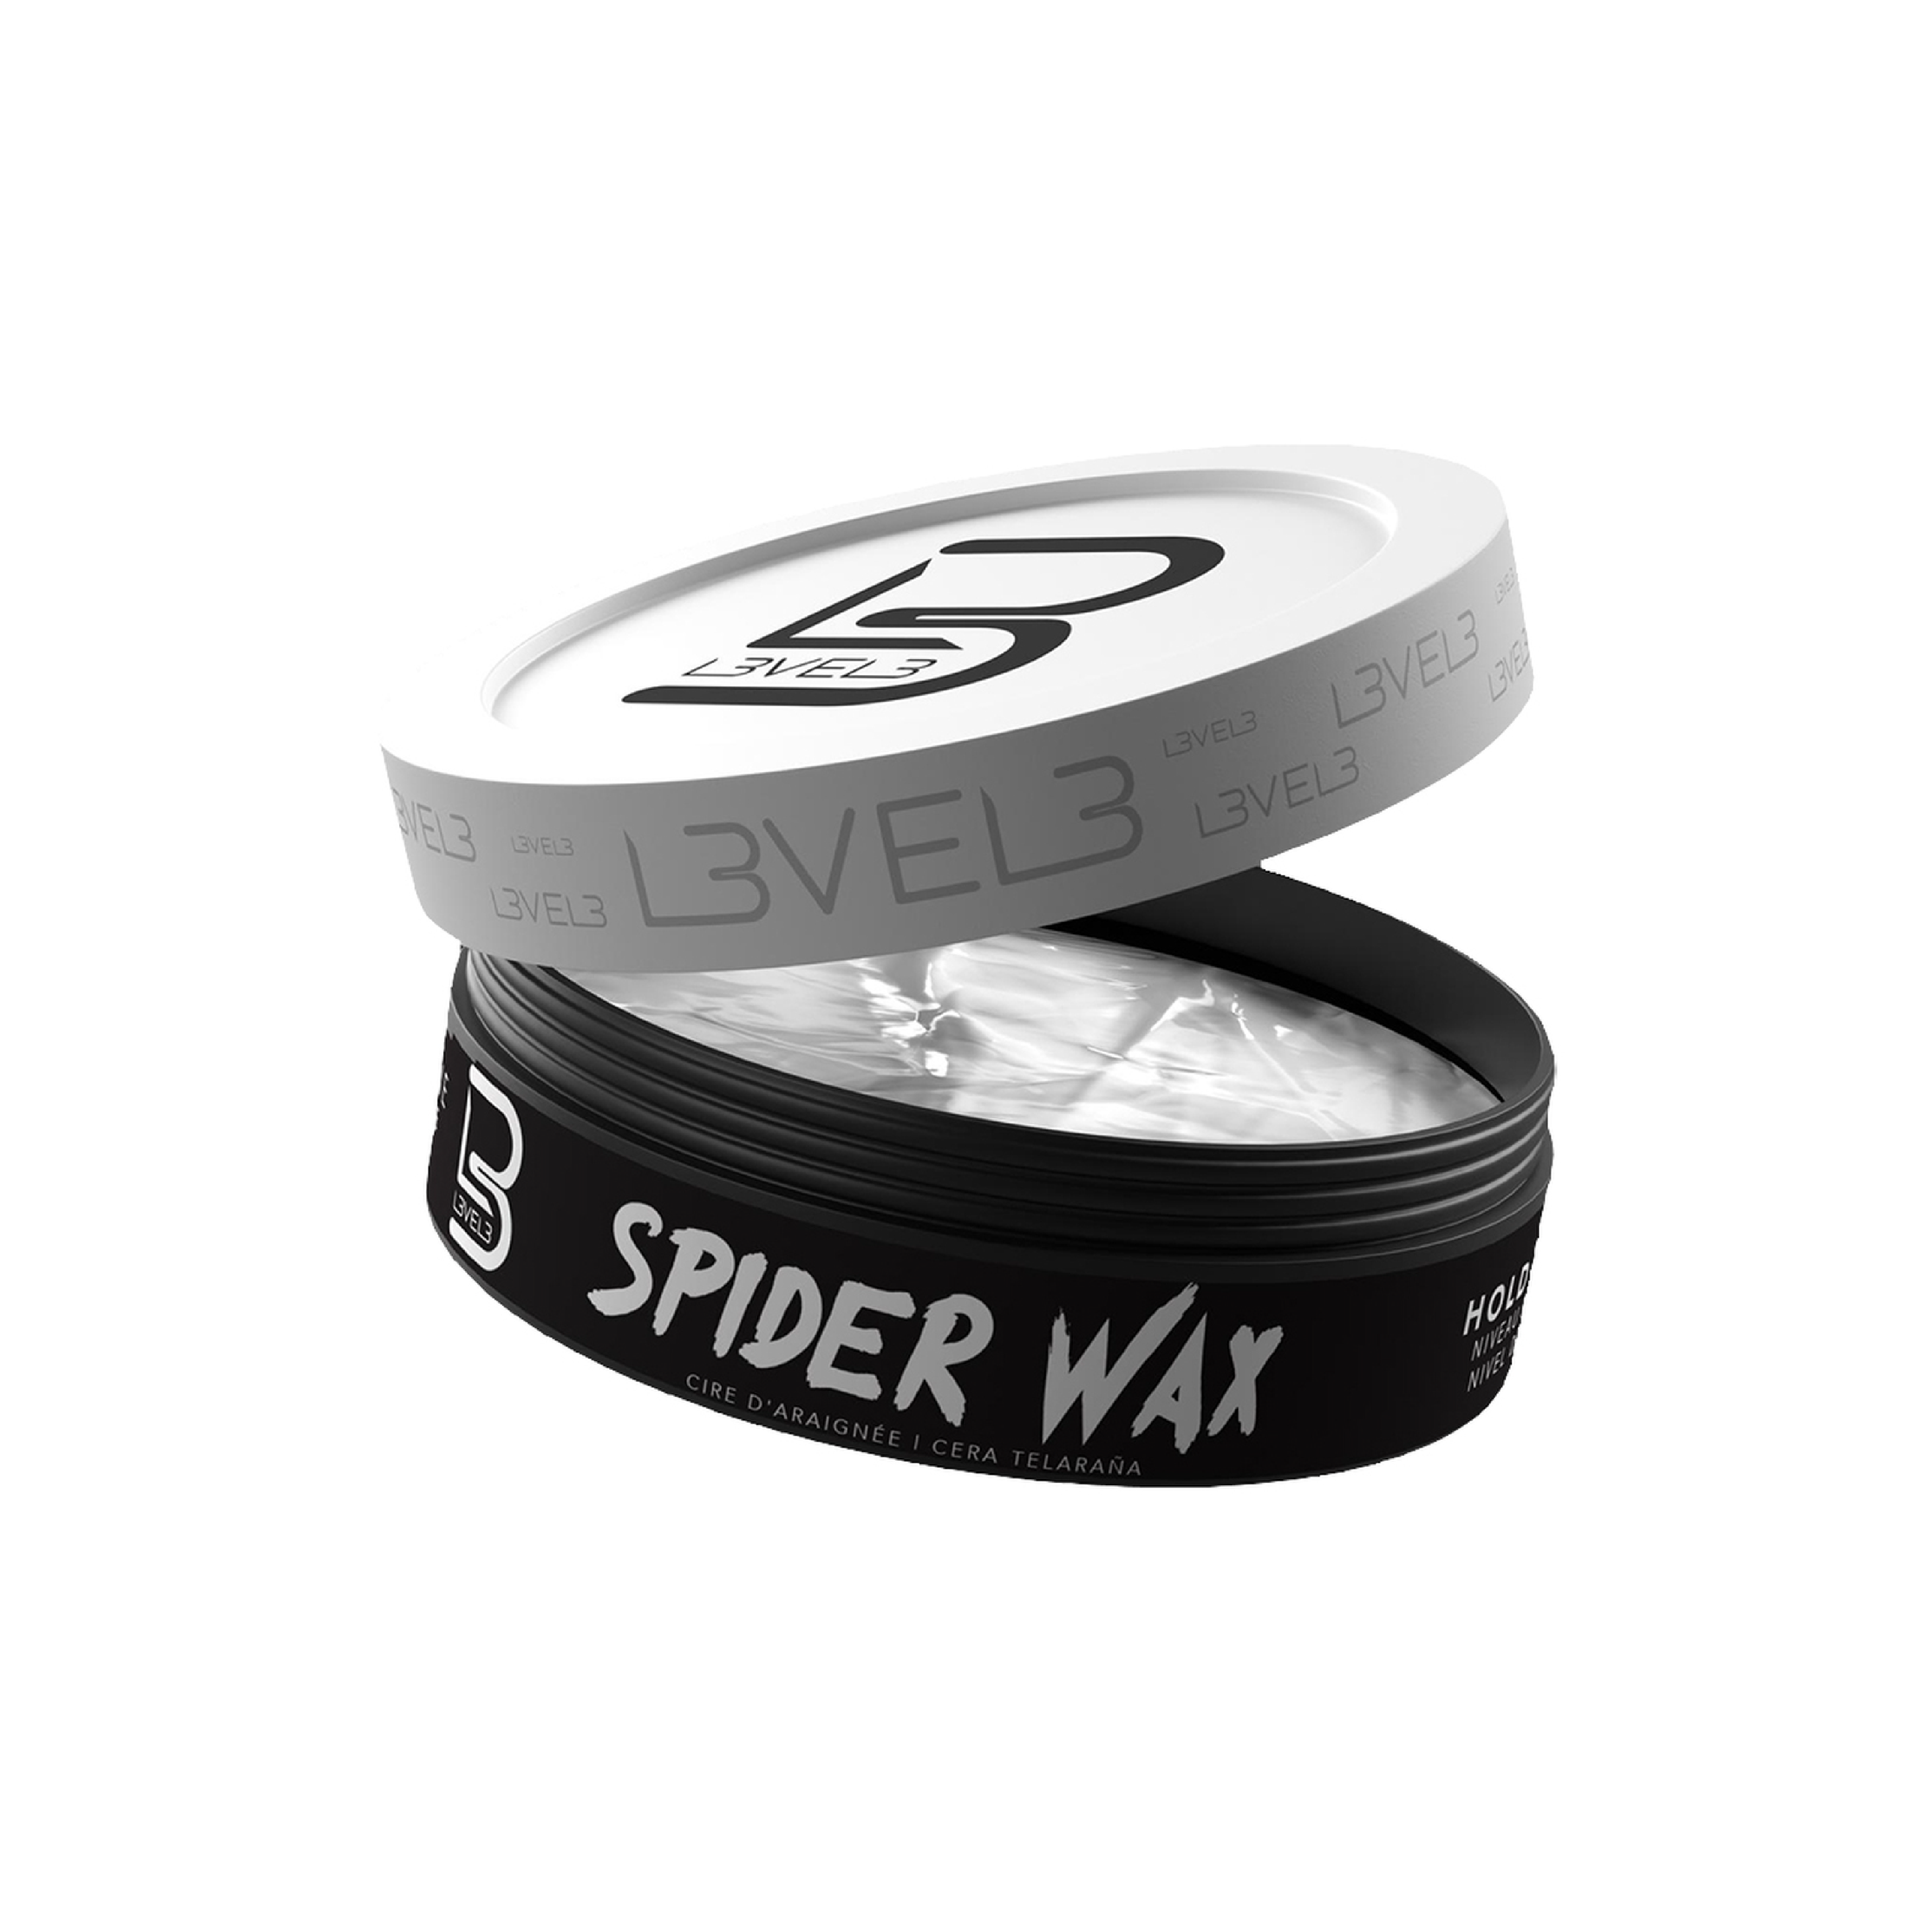 Level 3 Spider Wax - 150ml